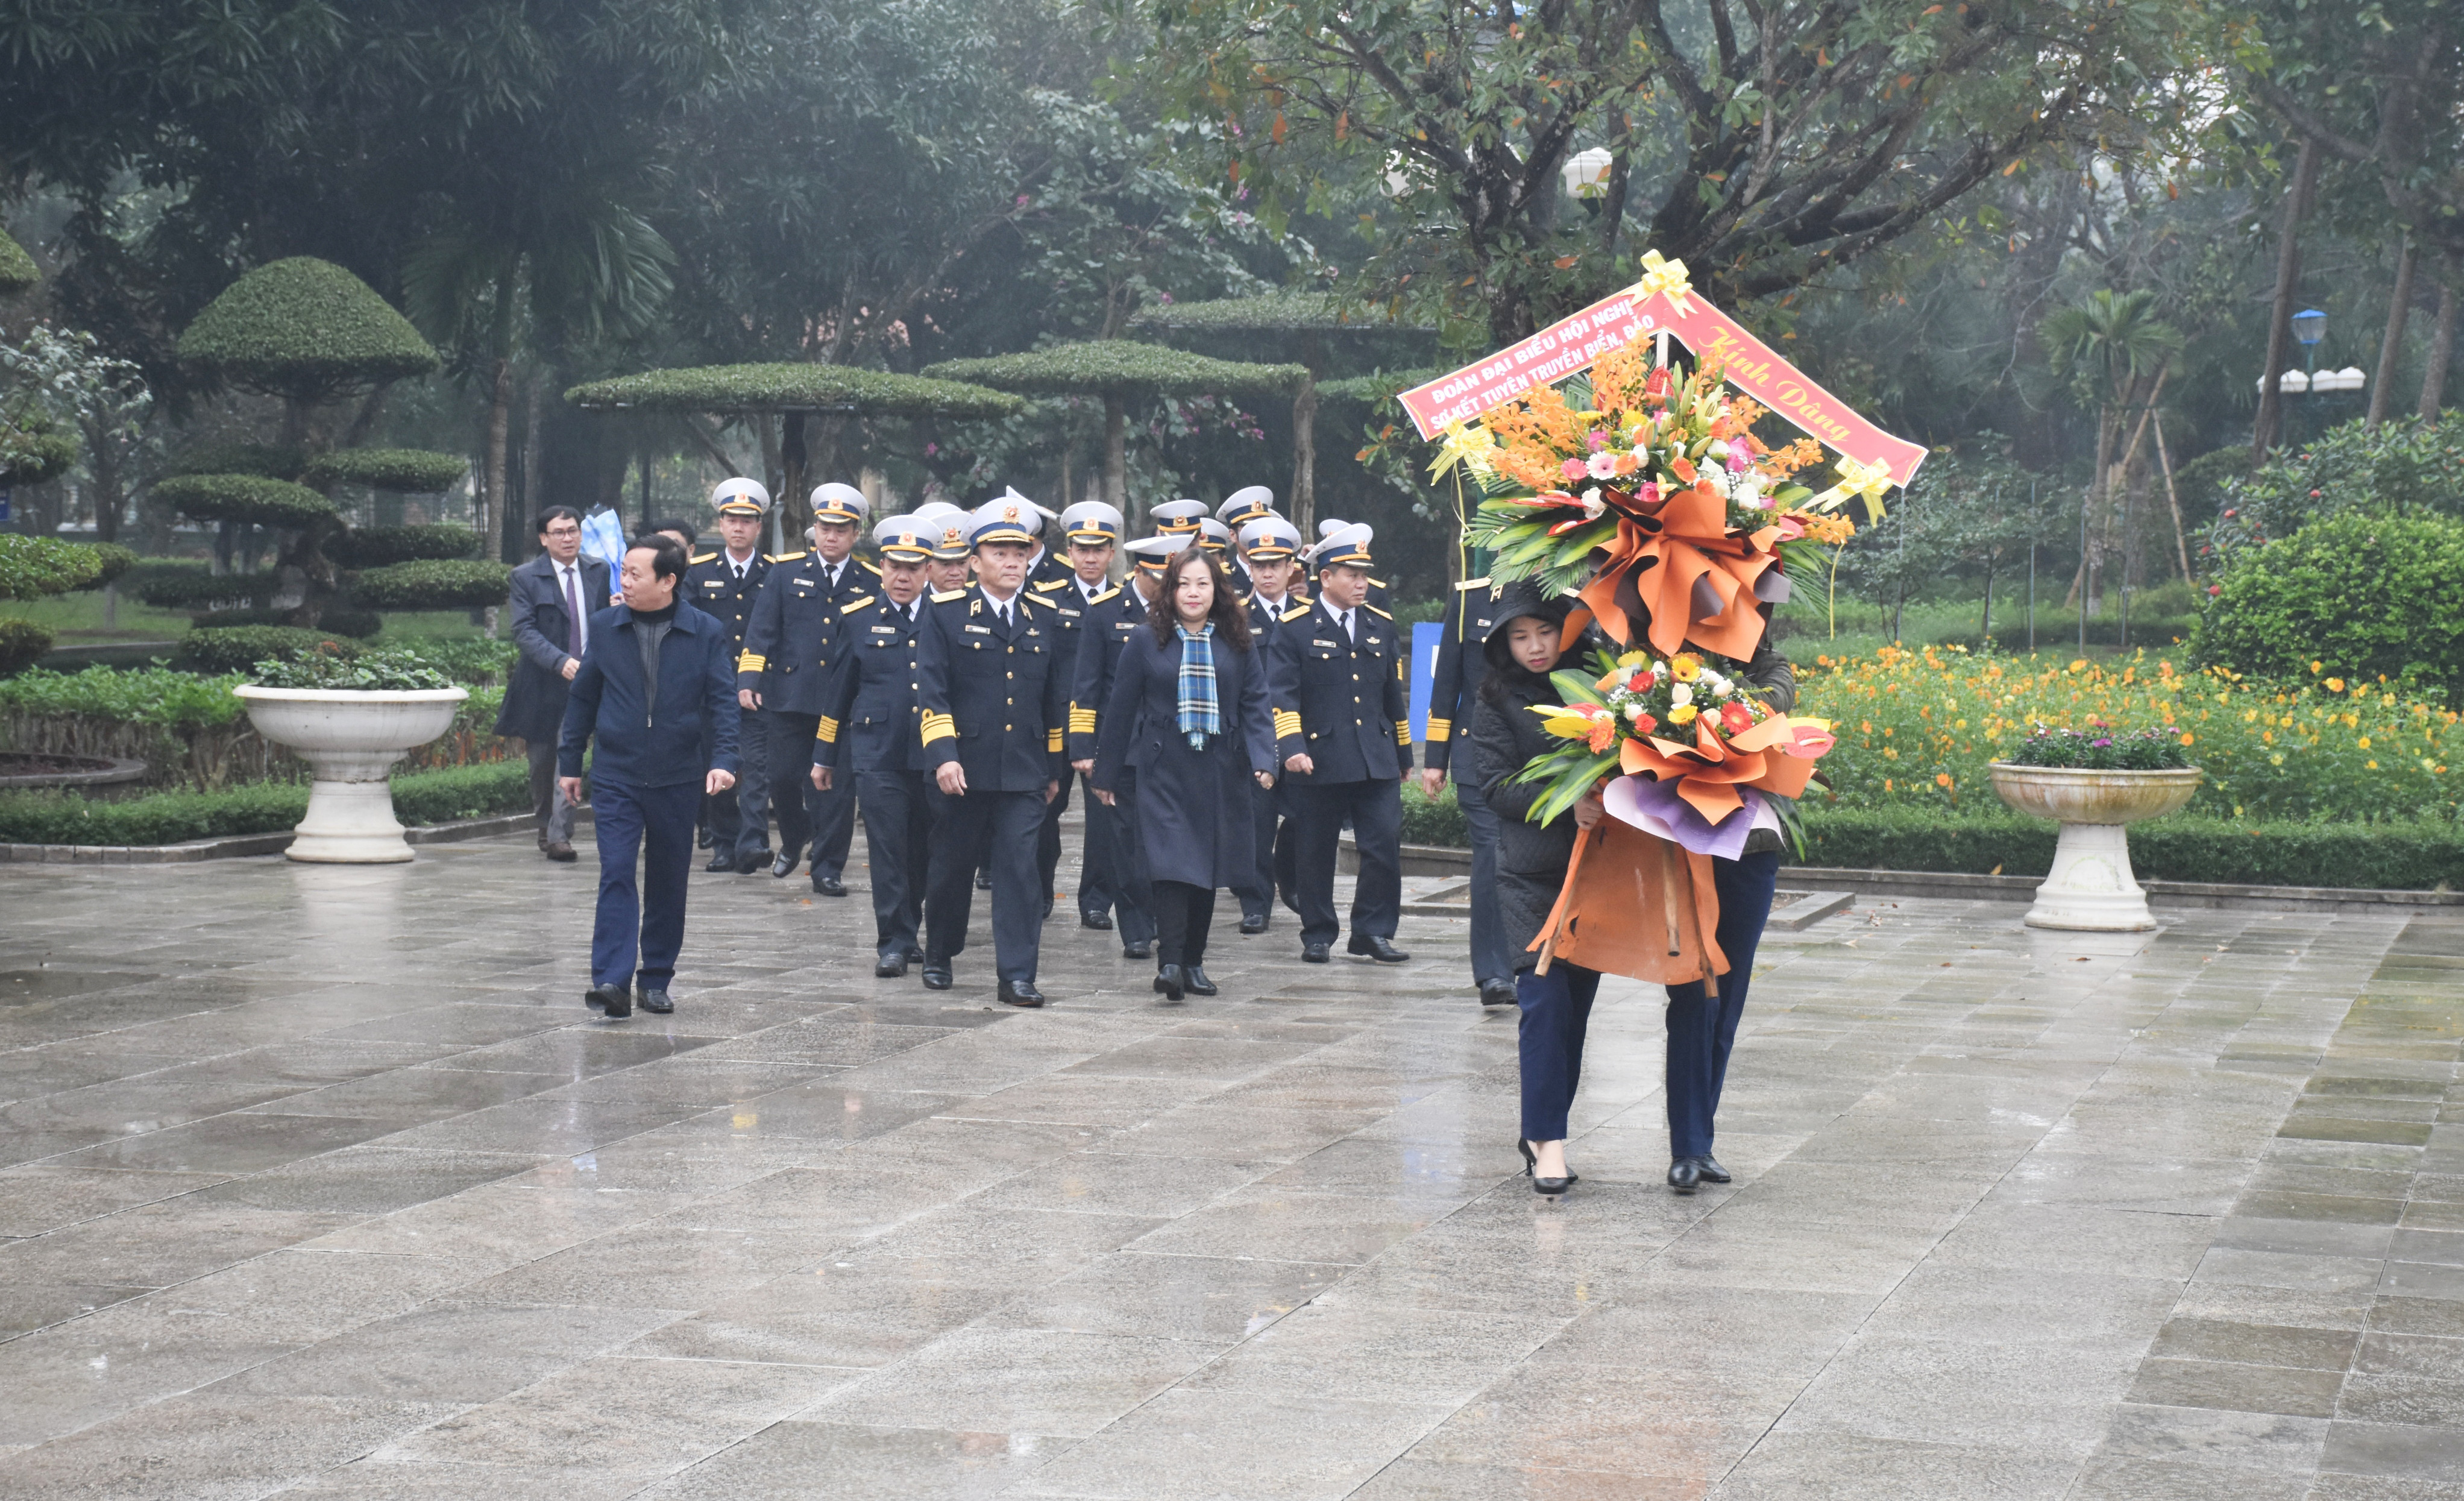 Đoàn đại biểu dâng hoa tưởng niệm Chủ tịch Hồ Chí Minh. Ảnh: Thanh Lê